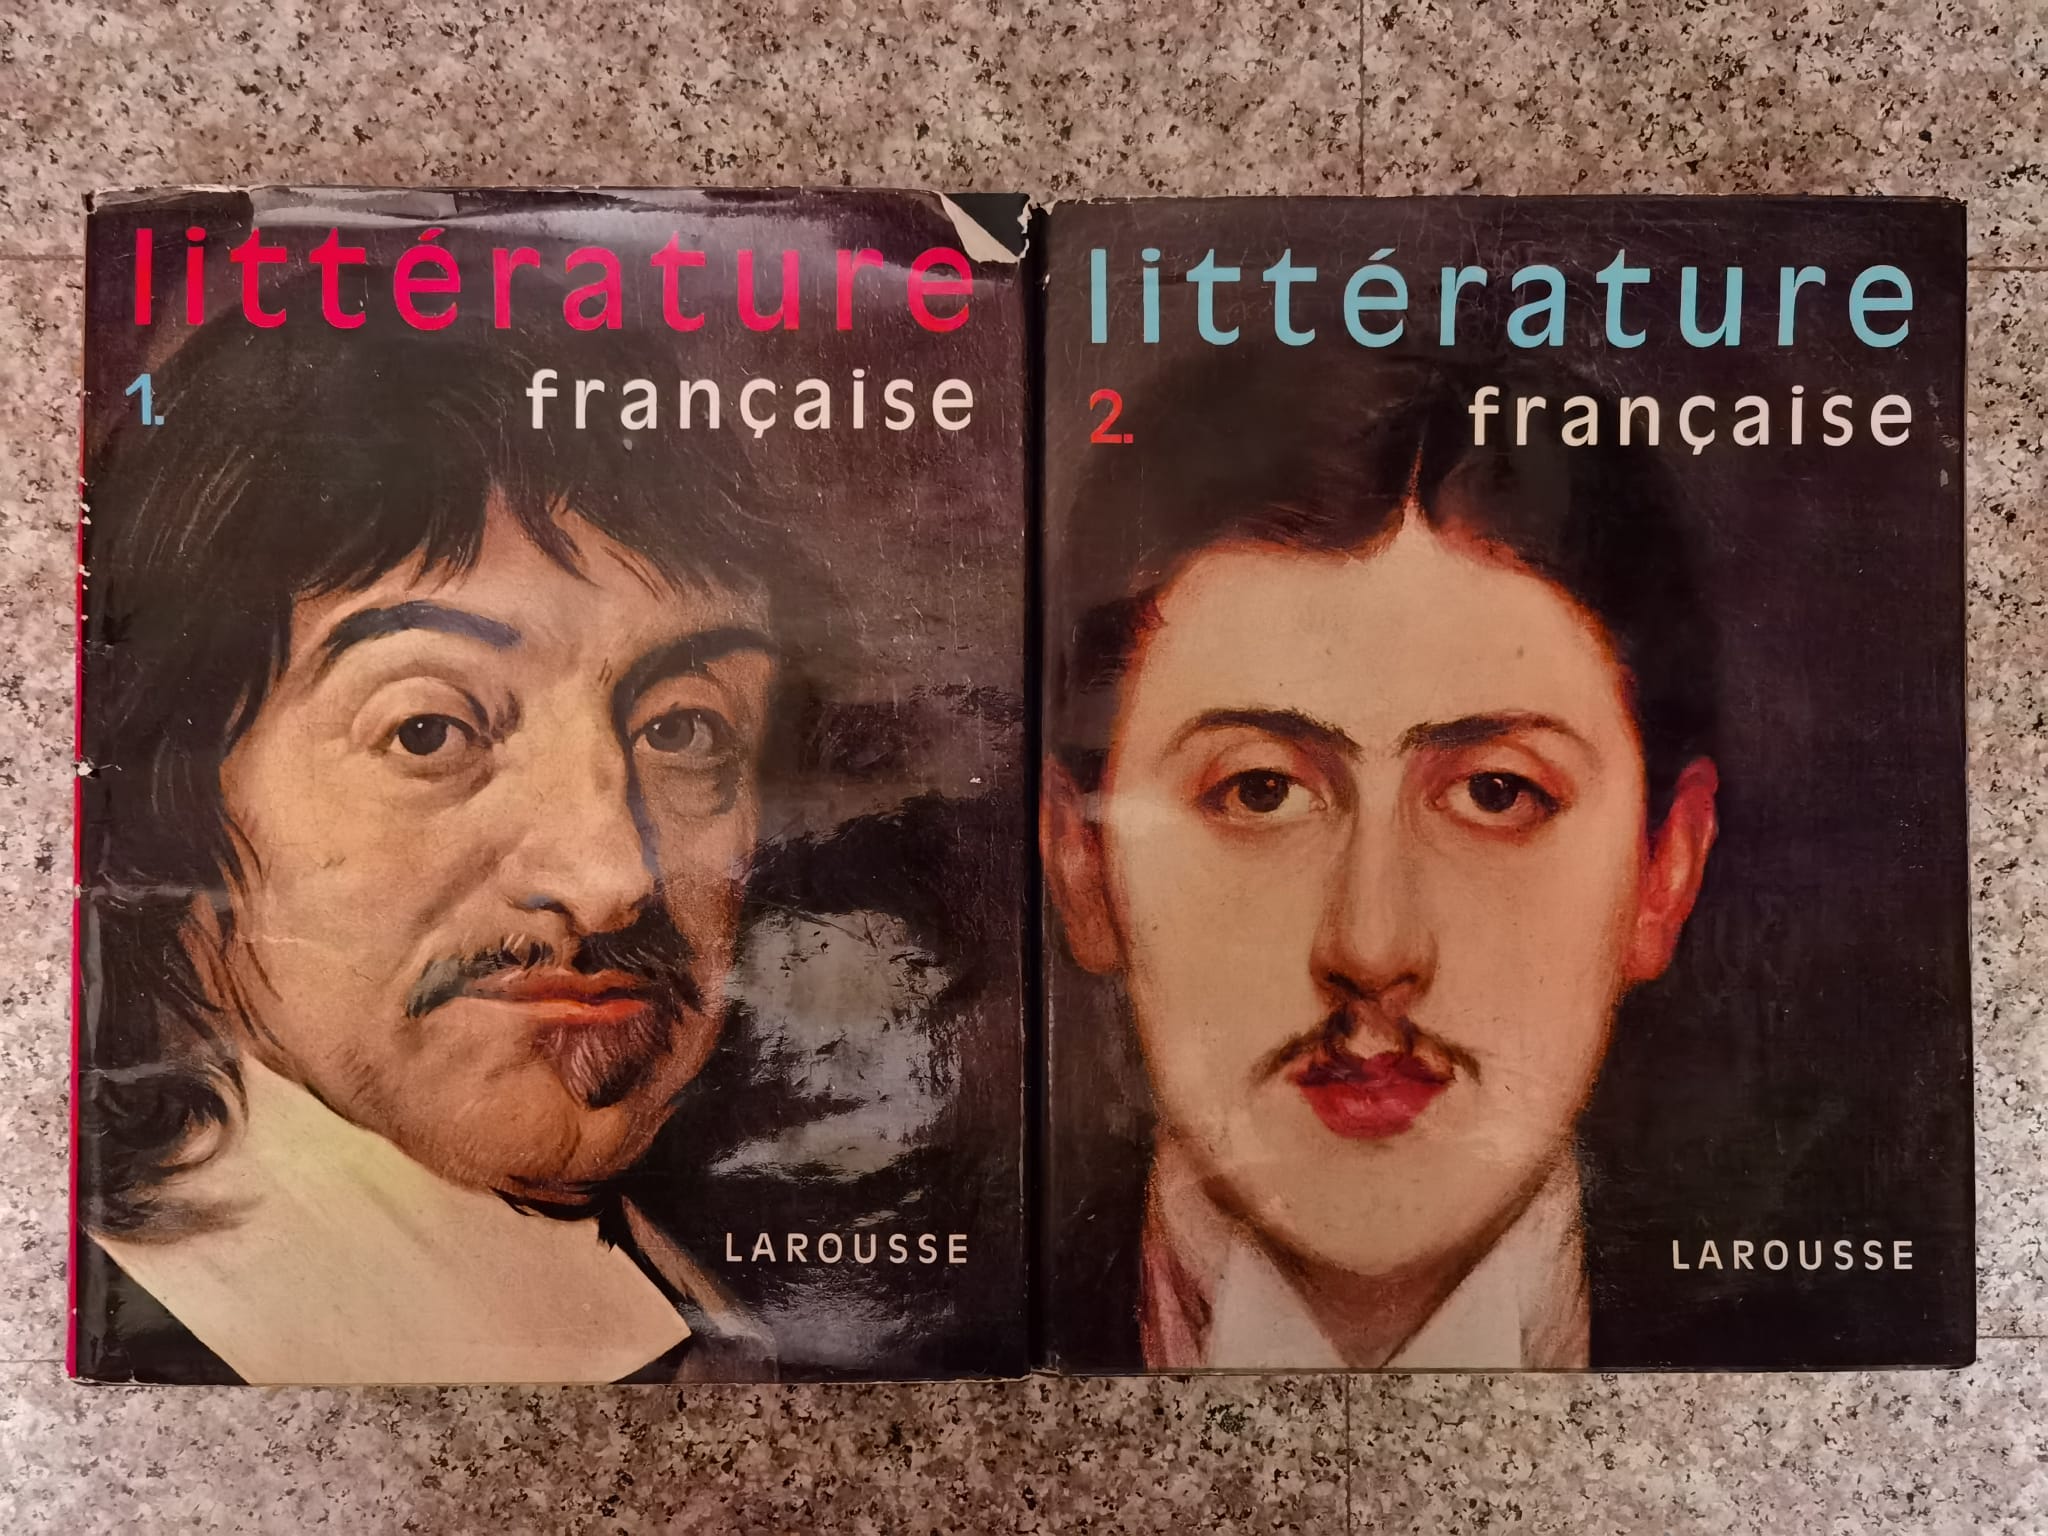 litterature francaise vol. 1-2                                                                       colectiv                                                                                            